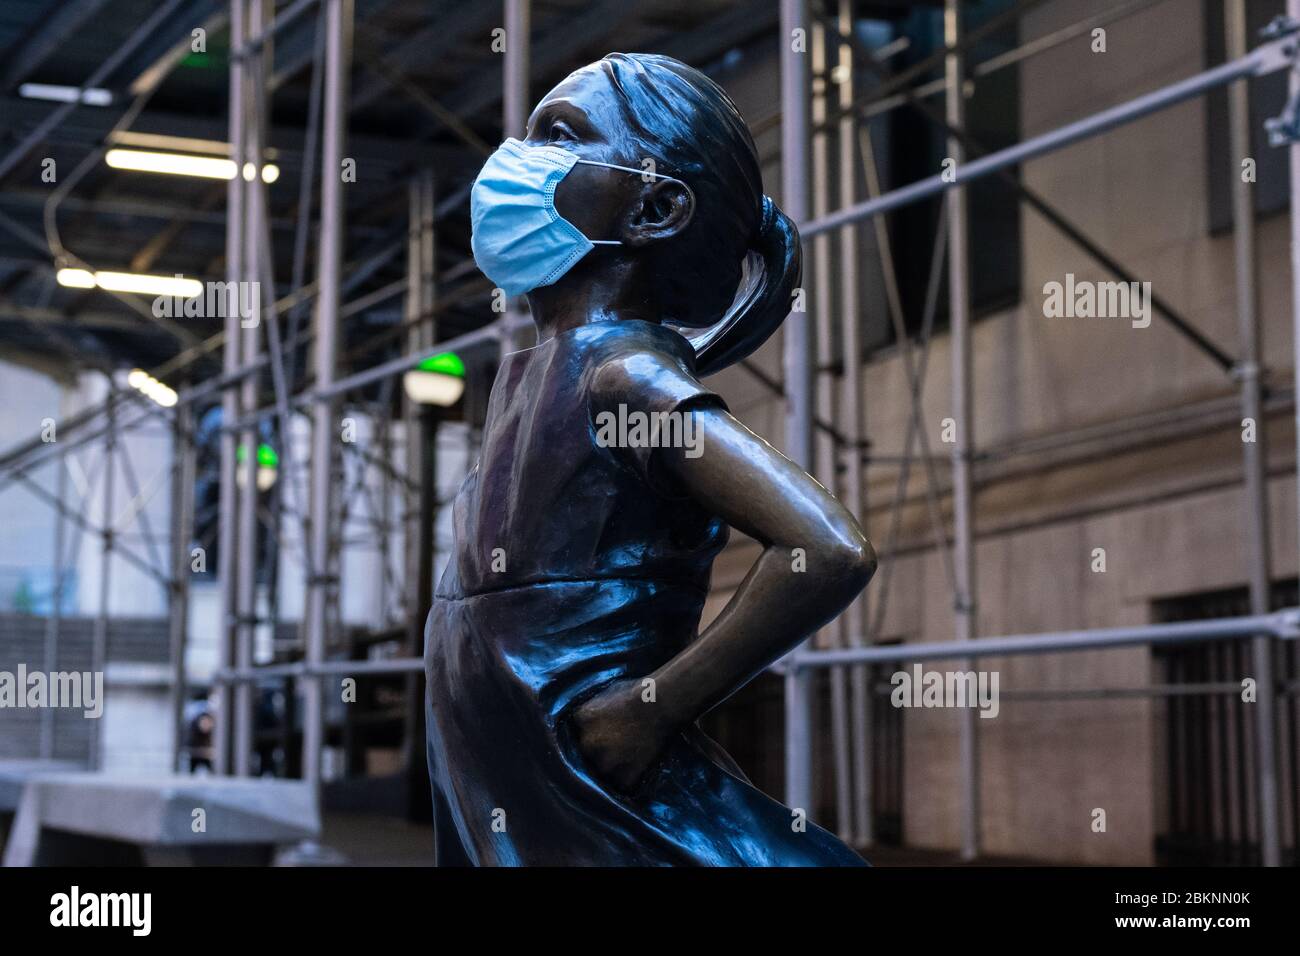 Die Statue "Fearless Girl" von Kristen Visbal vor der New Yorker Börse, die während der COVID-19-Pandemie eine chirurgische Gesichtsmaske trägt. Stockfoto